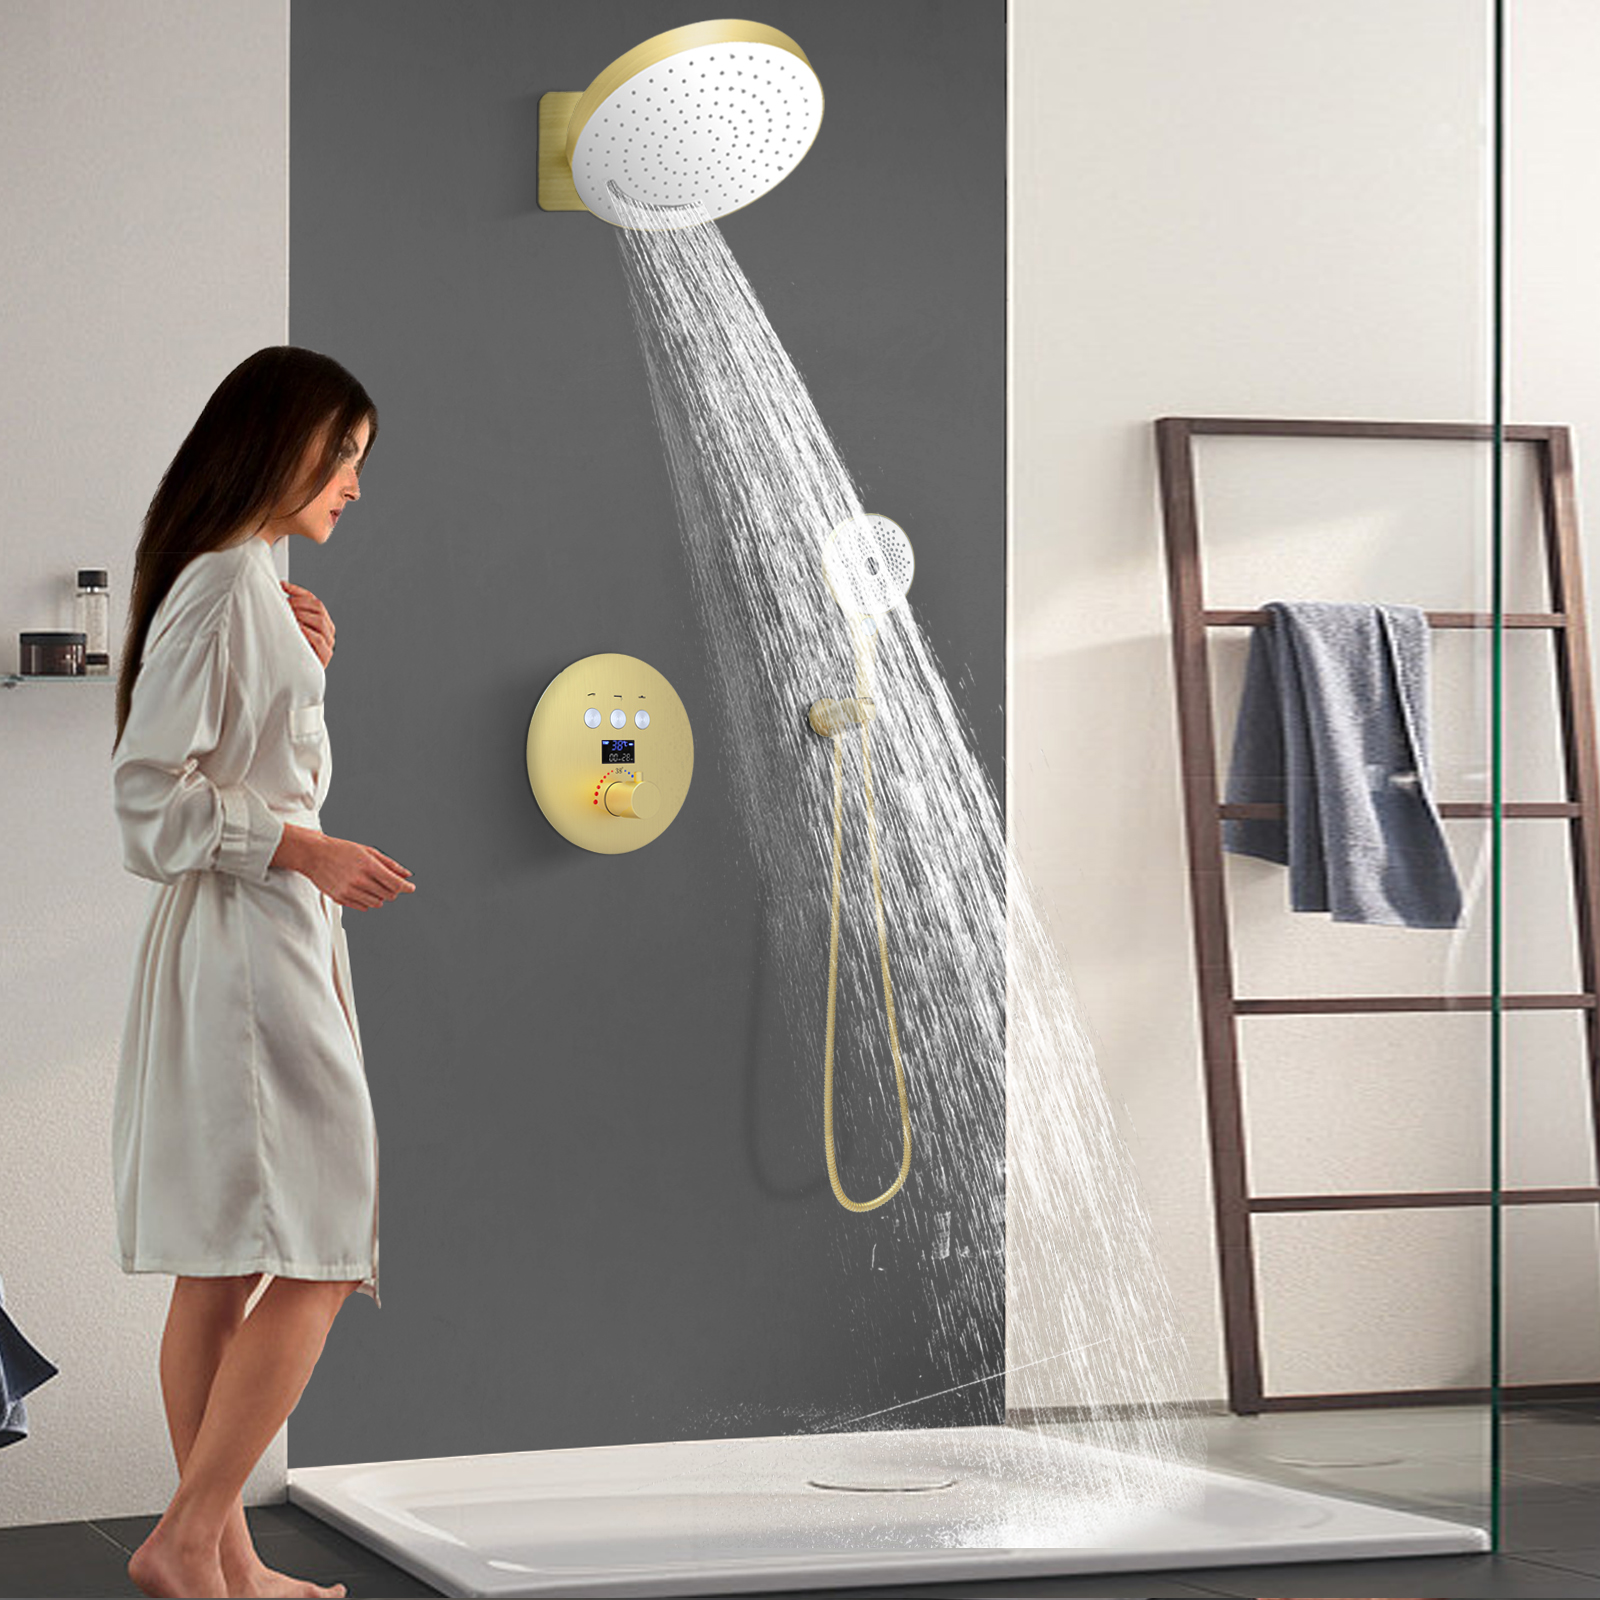 Brushed Gold Thermostat Digital Display Faucet Kit Bathroom Tub Shower Massage Jet System Set